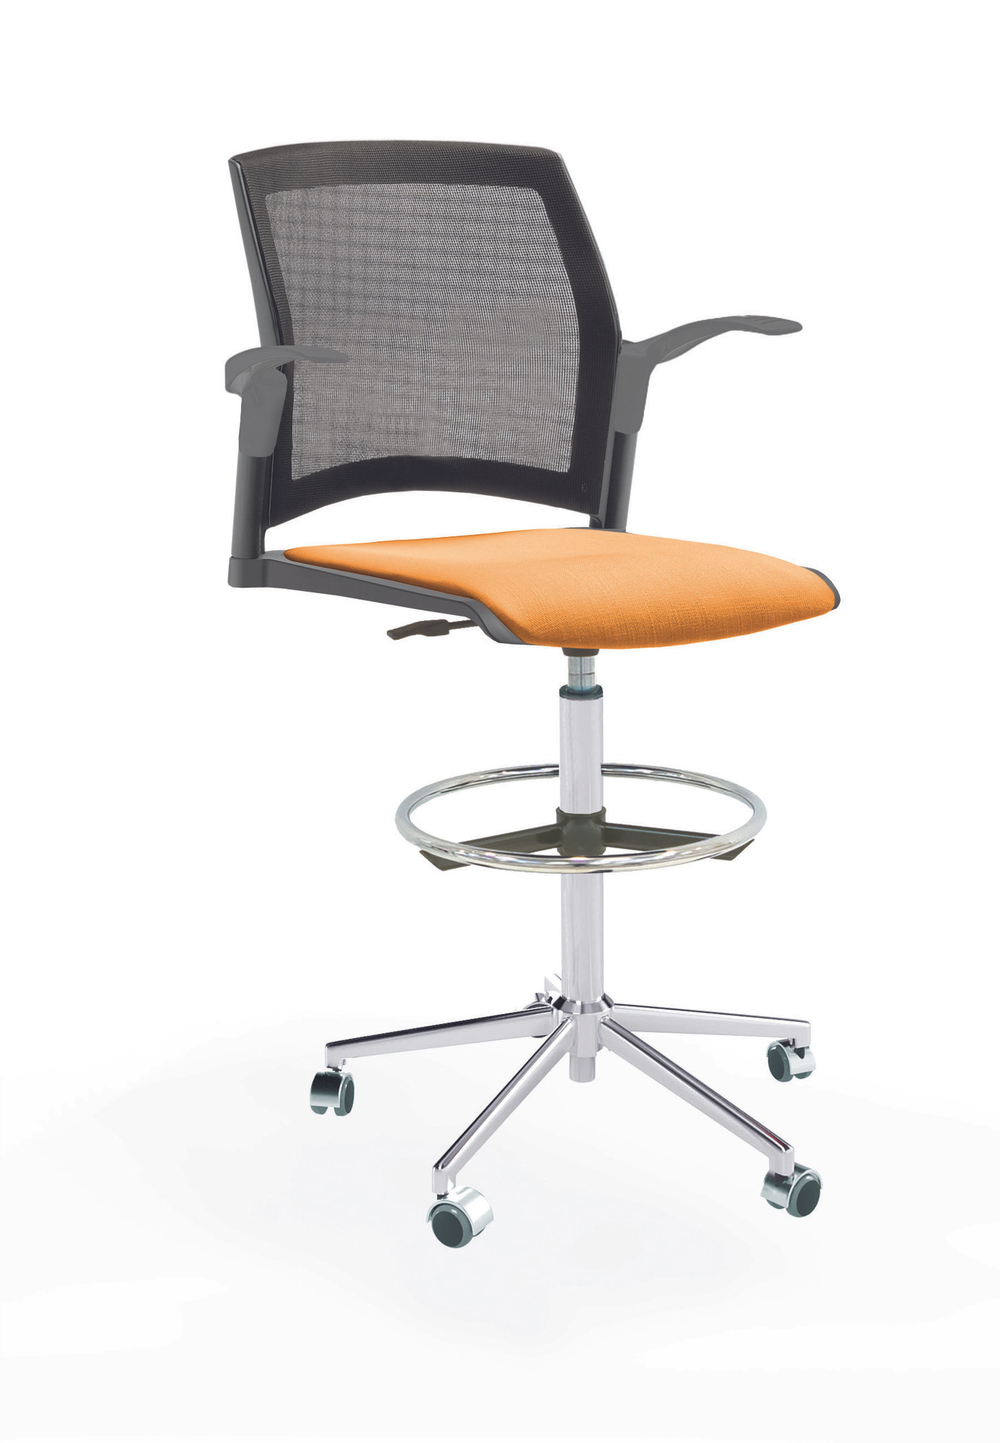 Кресло Rewind каркас хром, пластик серый, база стальная хромированная, с открытыми подлокотниками, сиденье оранжевое, спинка-сетка